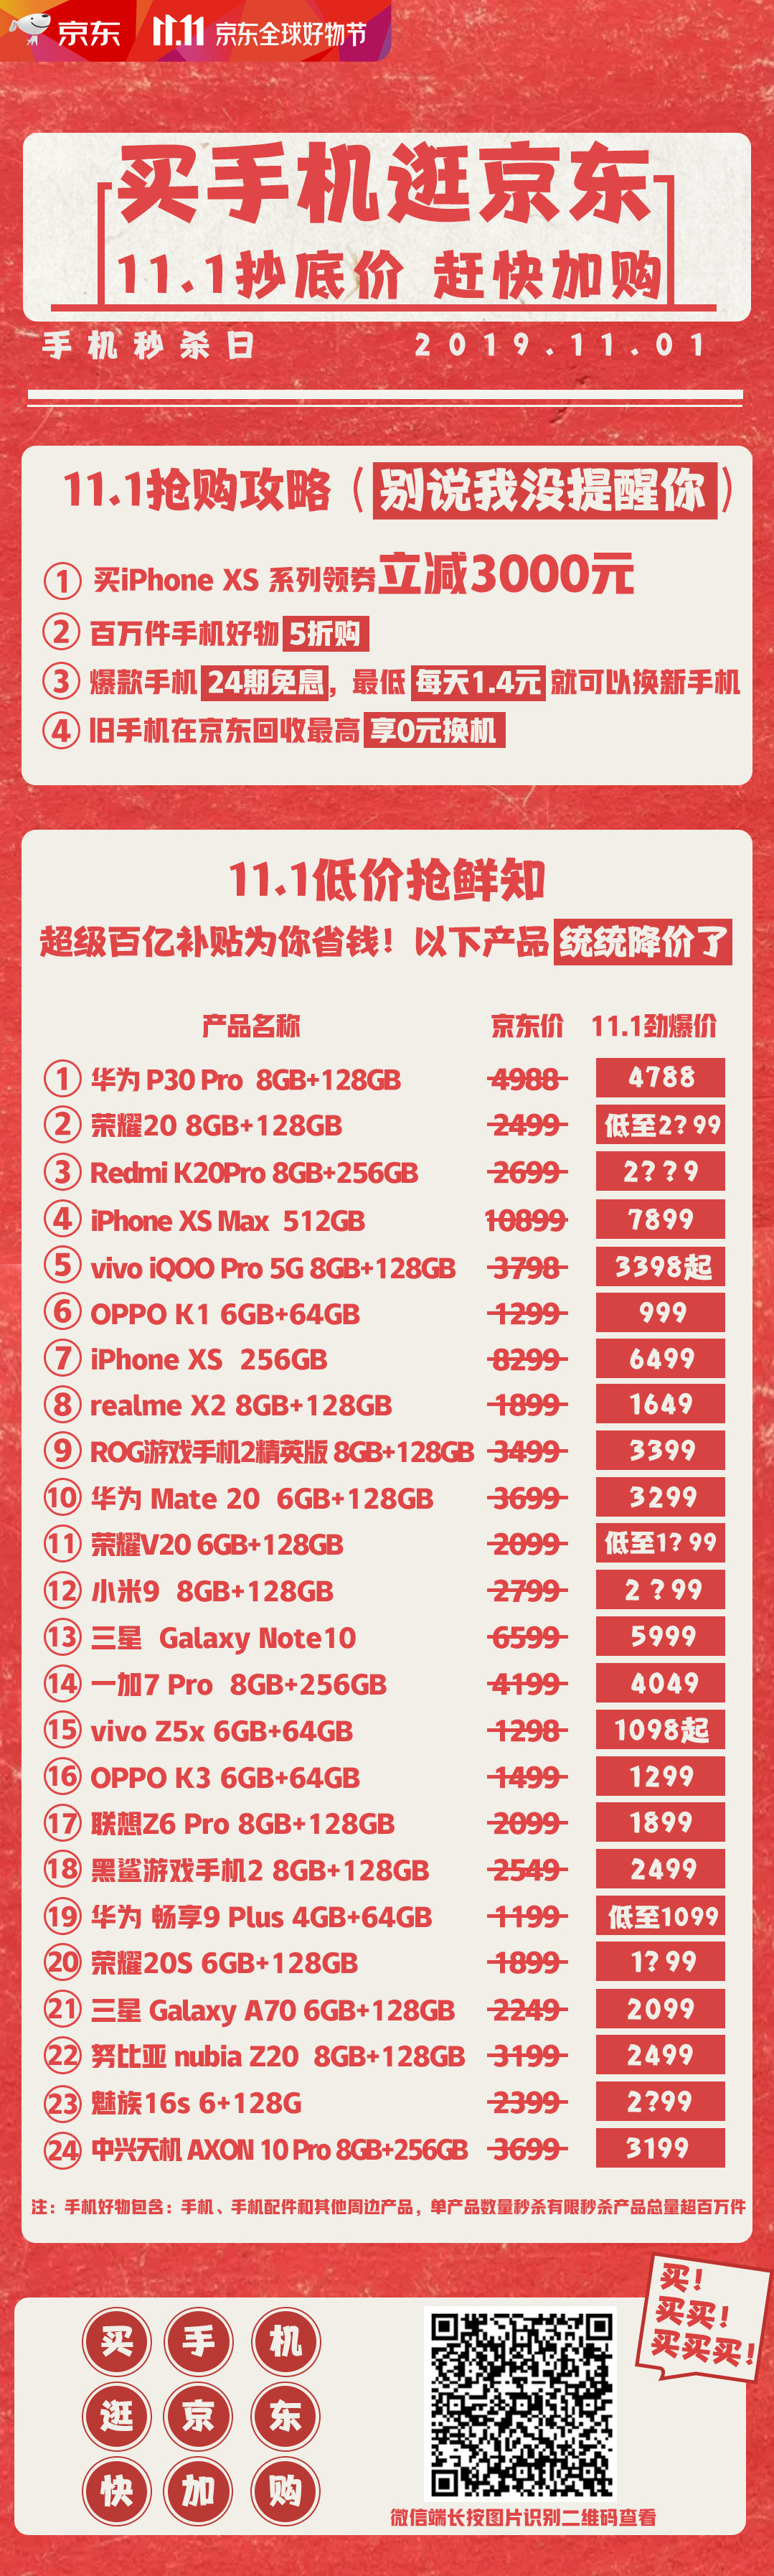 京东手机秒杀日11月1日开启，iPhone最高可减3000元， 5G手机24期免息享